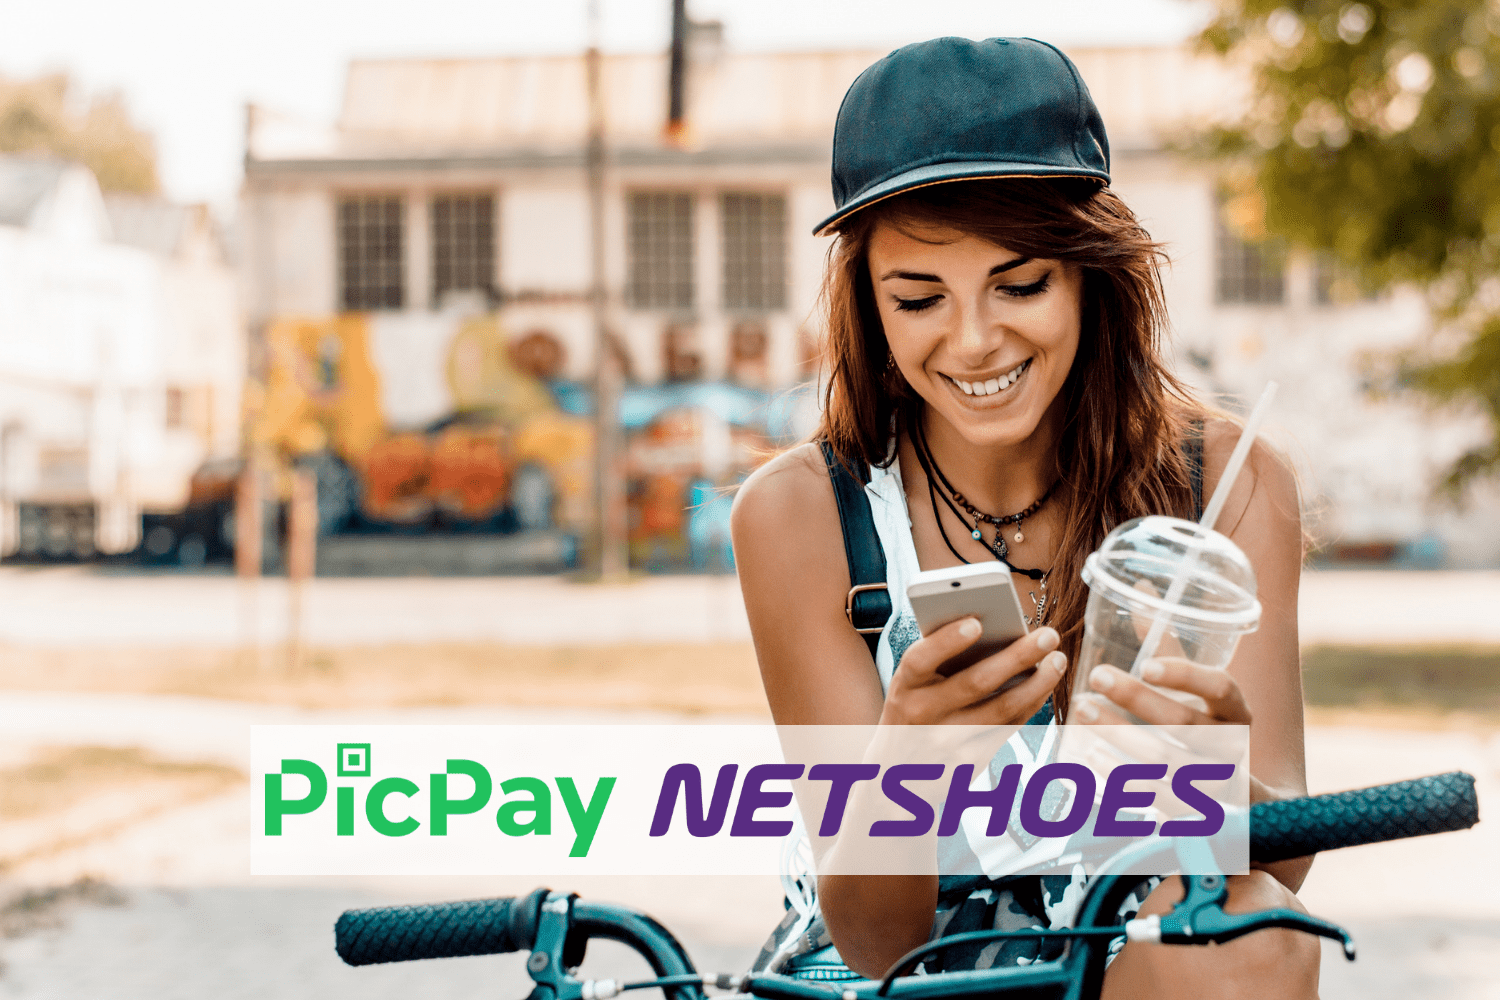 Netshoes e PicPay